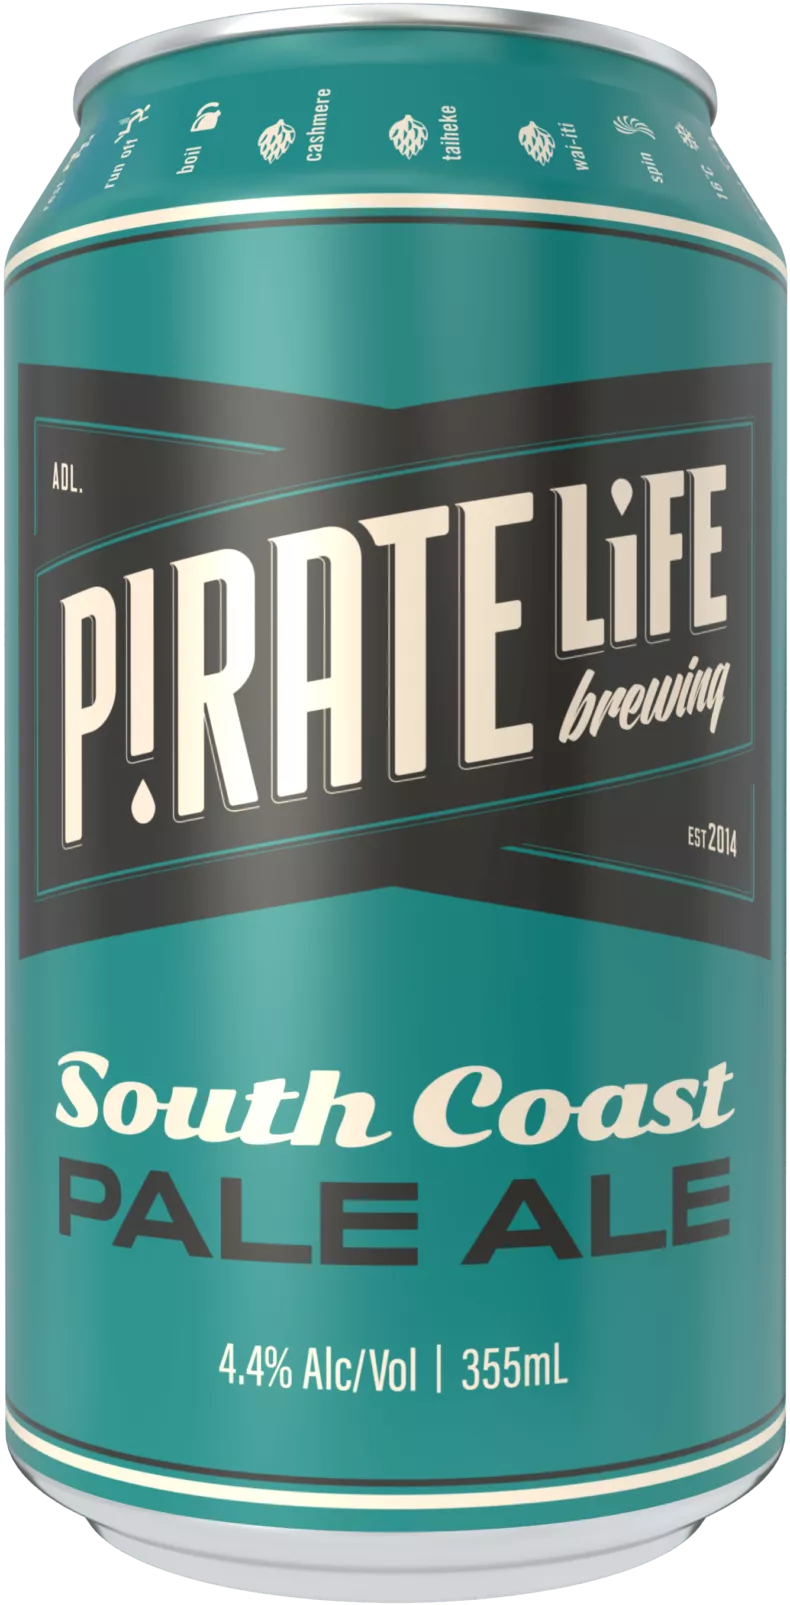 South Coast Pale Ale